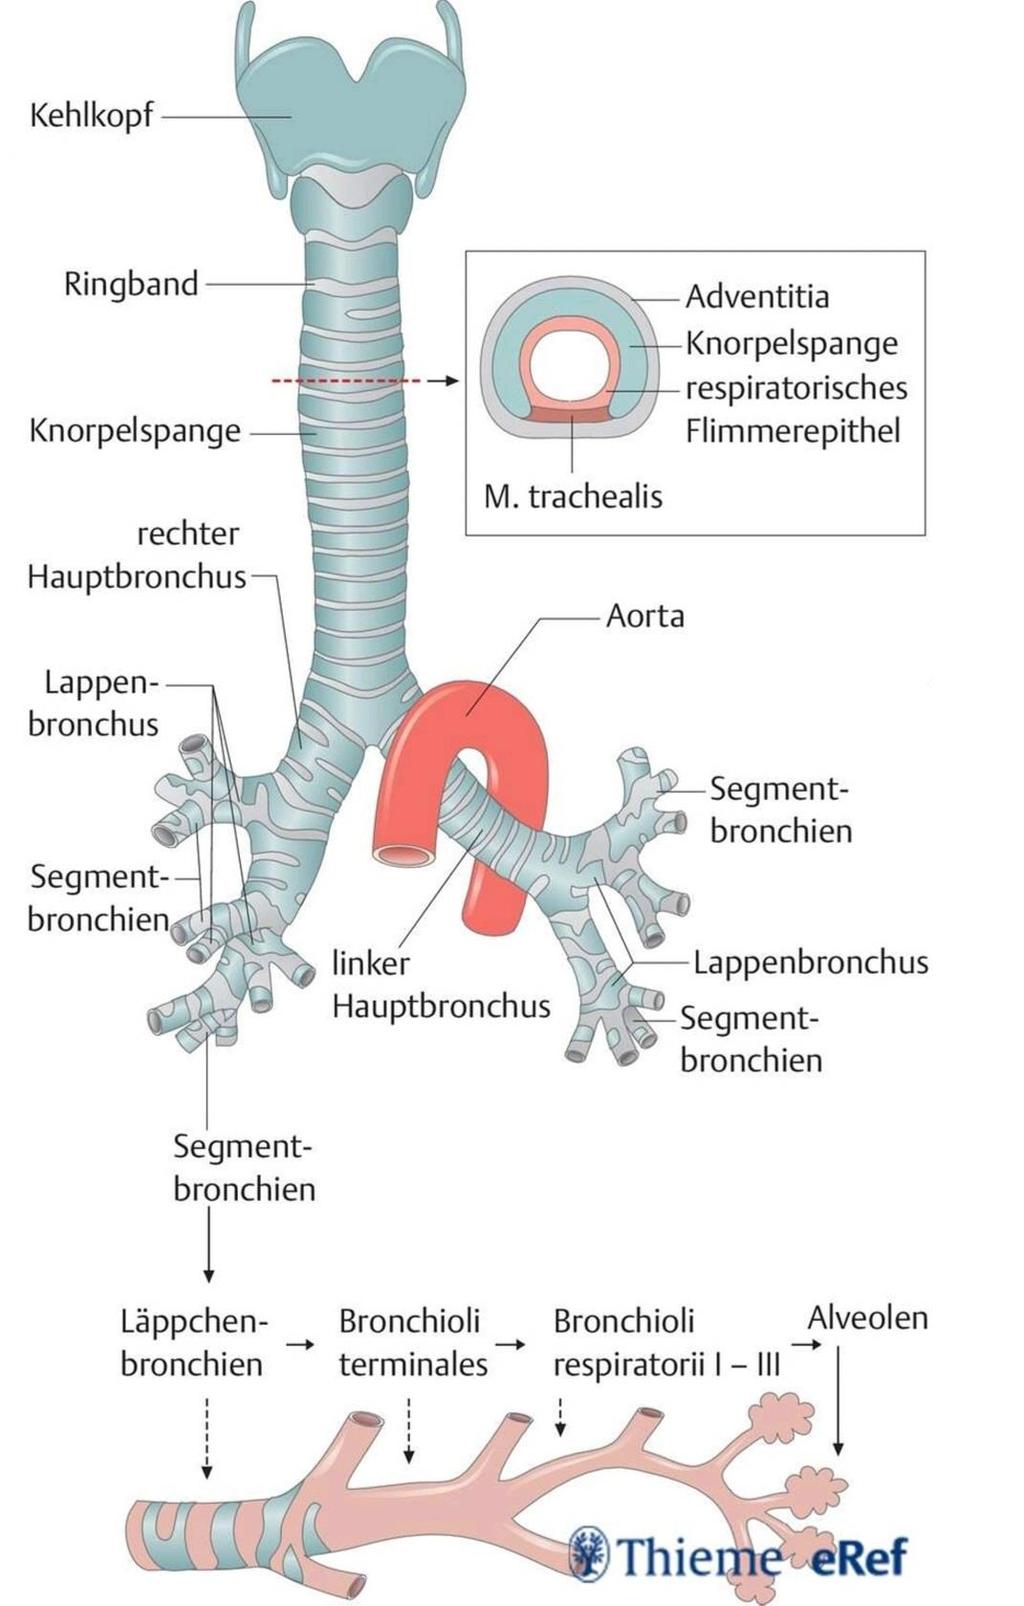 Aufzweigung des Bronchialbaums Die Luftröhre teilt sich in 2 Hauptbronchien Der rechte Hauptbronchus verzweigt sich erst in 3 Lappenbronchien, die sich in insgesamt 10 Segmentbronchien aufteilen